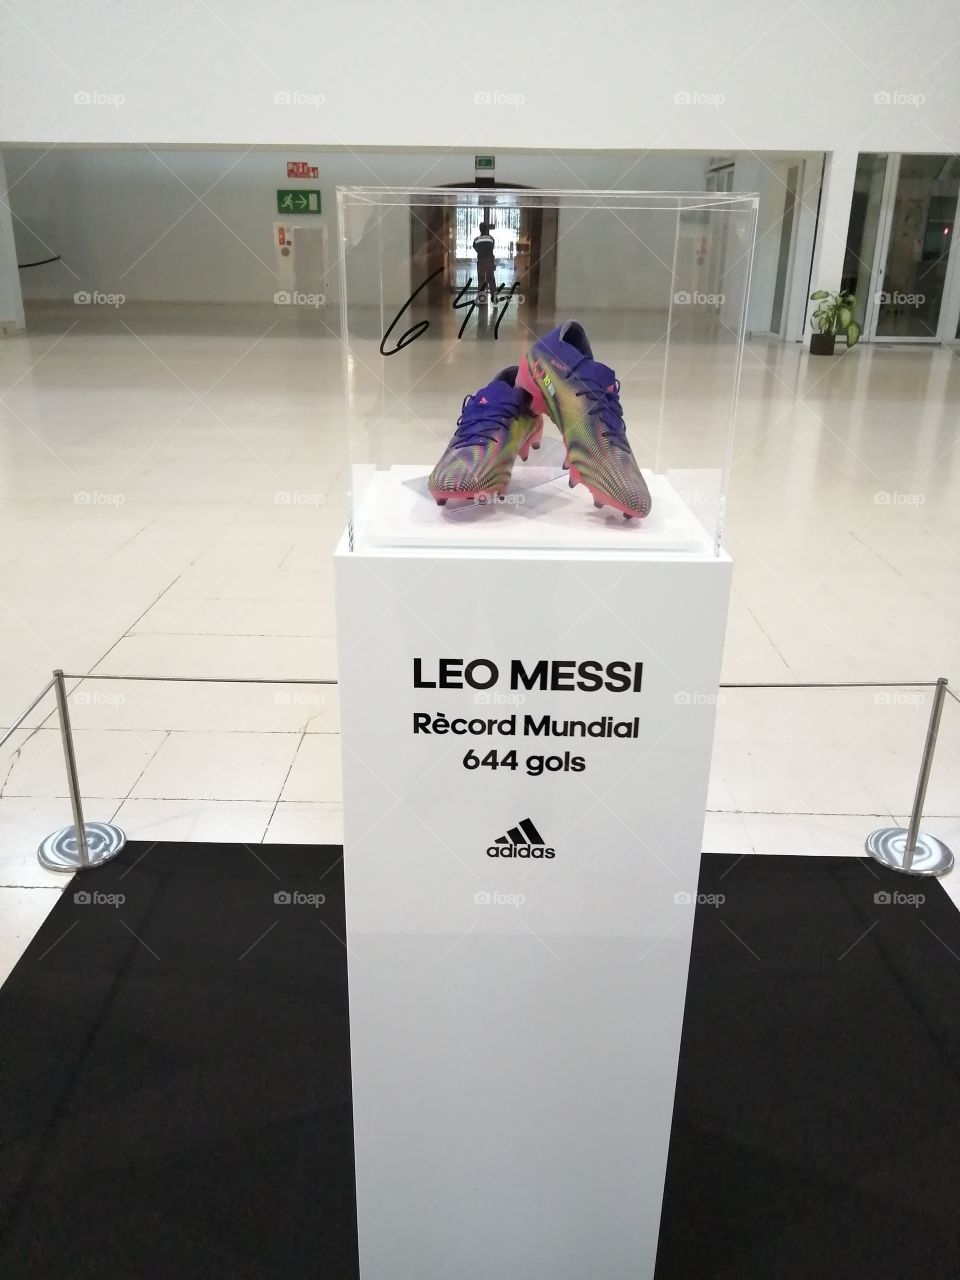 Botes de Leo Messi
Museu Nacional d'Art de Catalunya